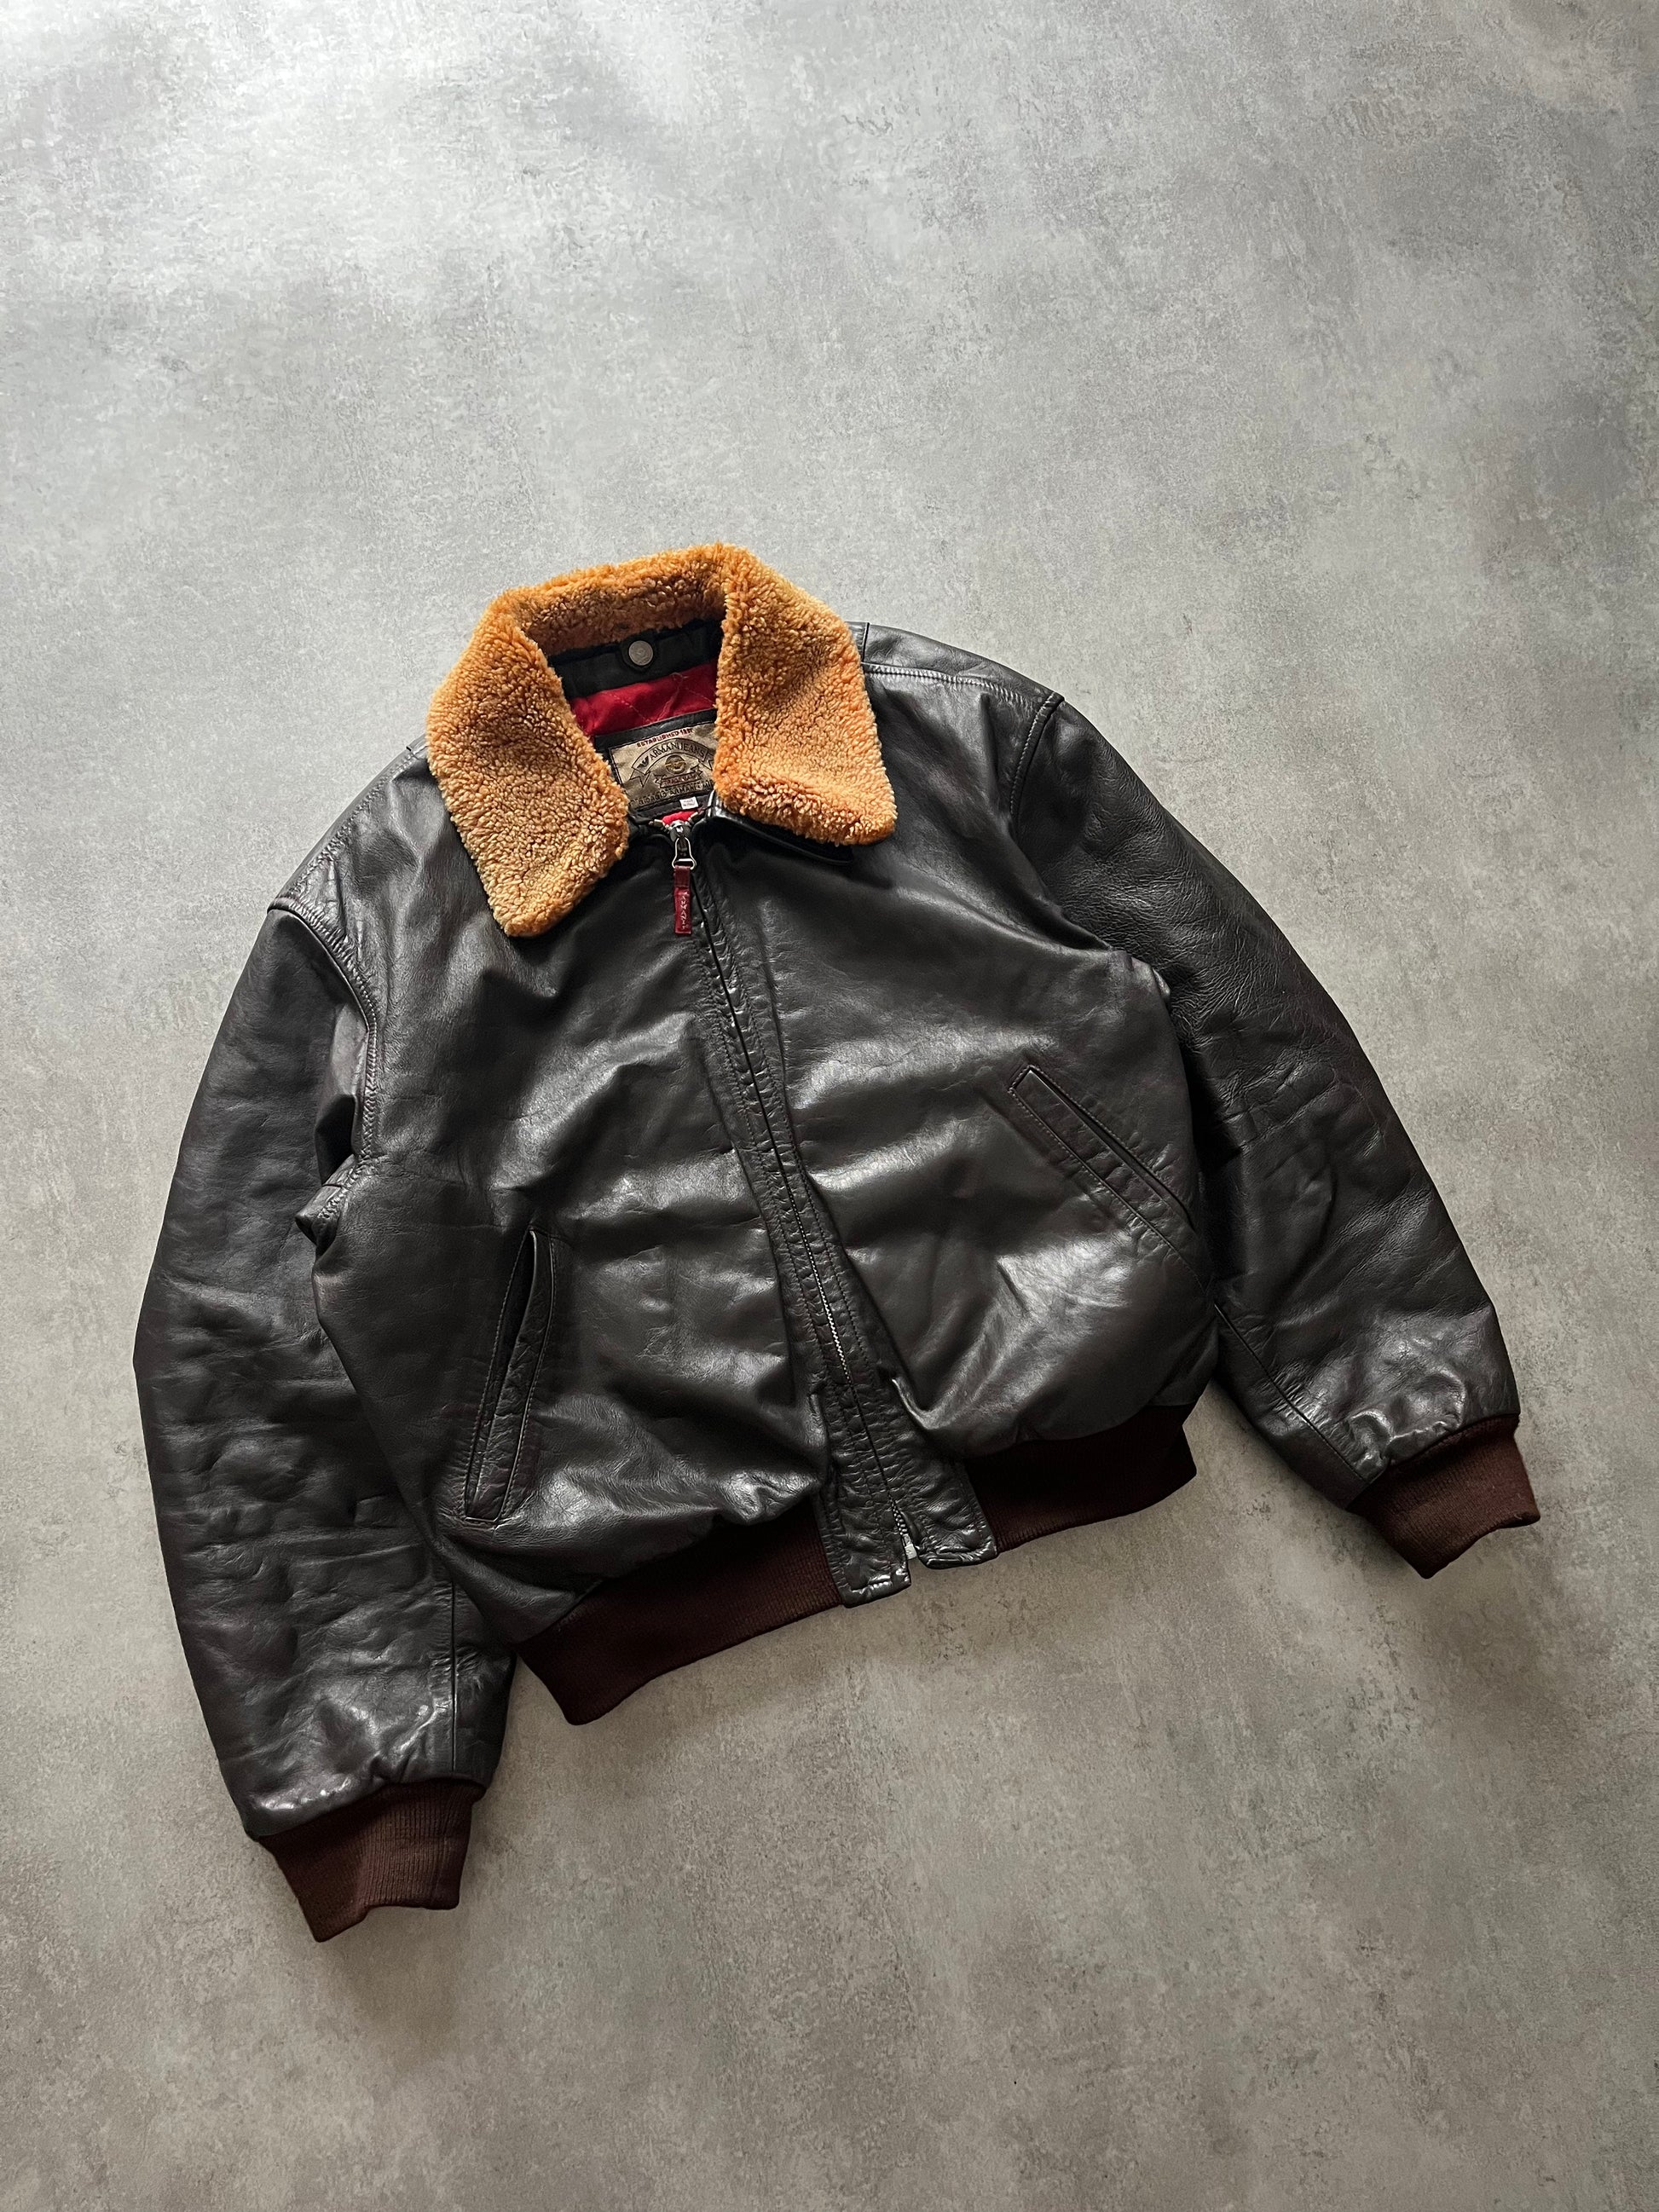 1980s Giorgio Armani Leather Bomber Jacket (M) - 5